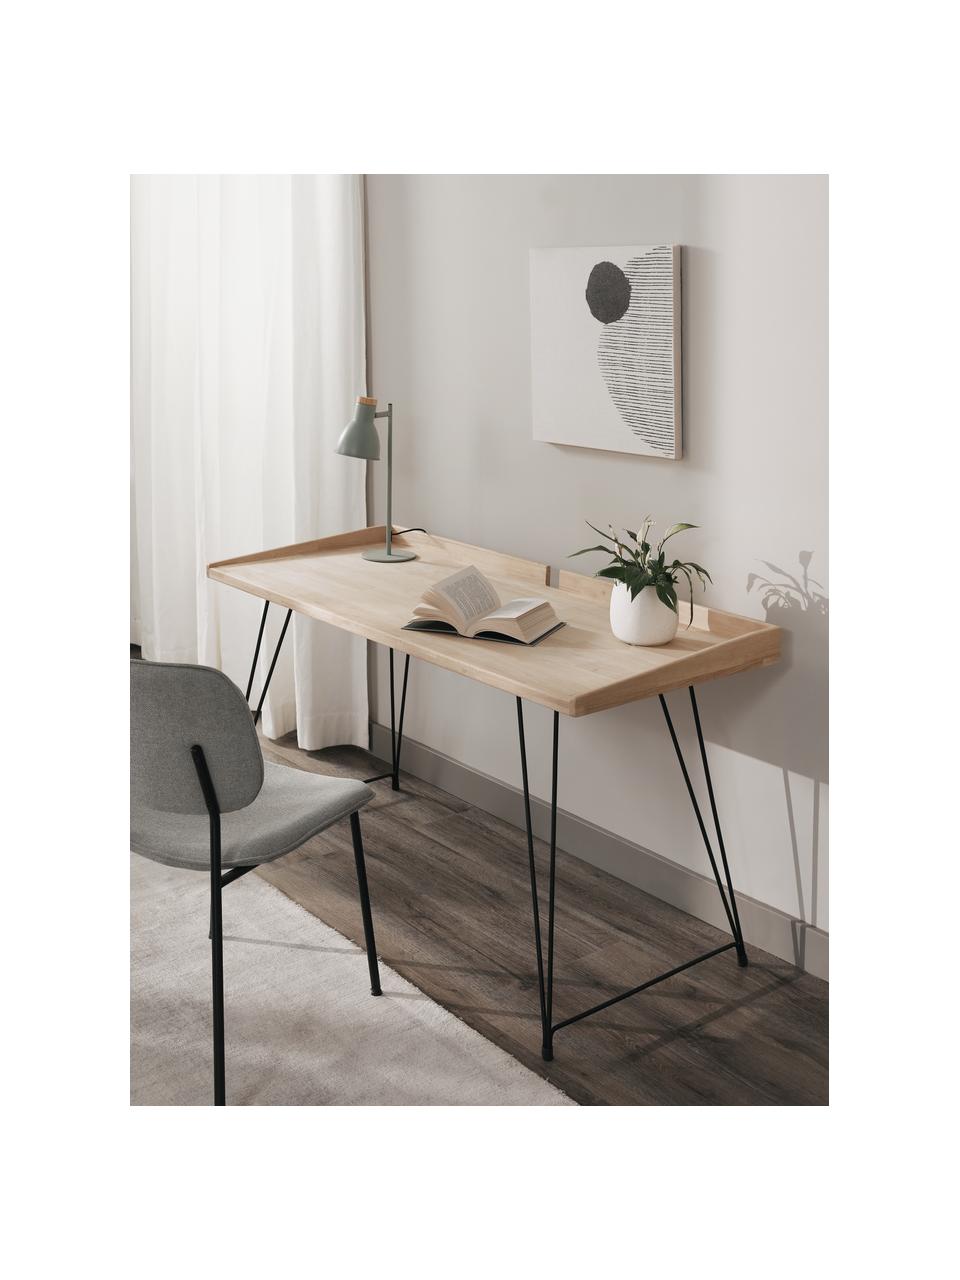 Schreibtisch District im Industrial-Style, Tischplatte: Gummibaumholz, Beine: Stahl, lackiert, Braun, B 142 x T 61 cm